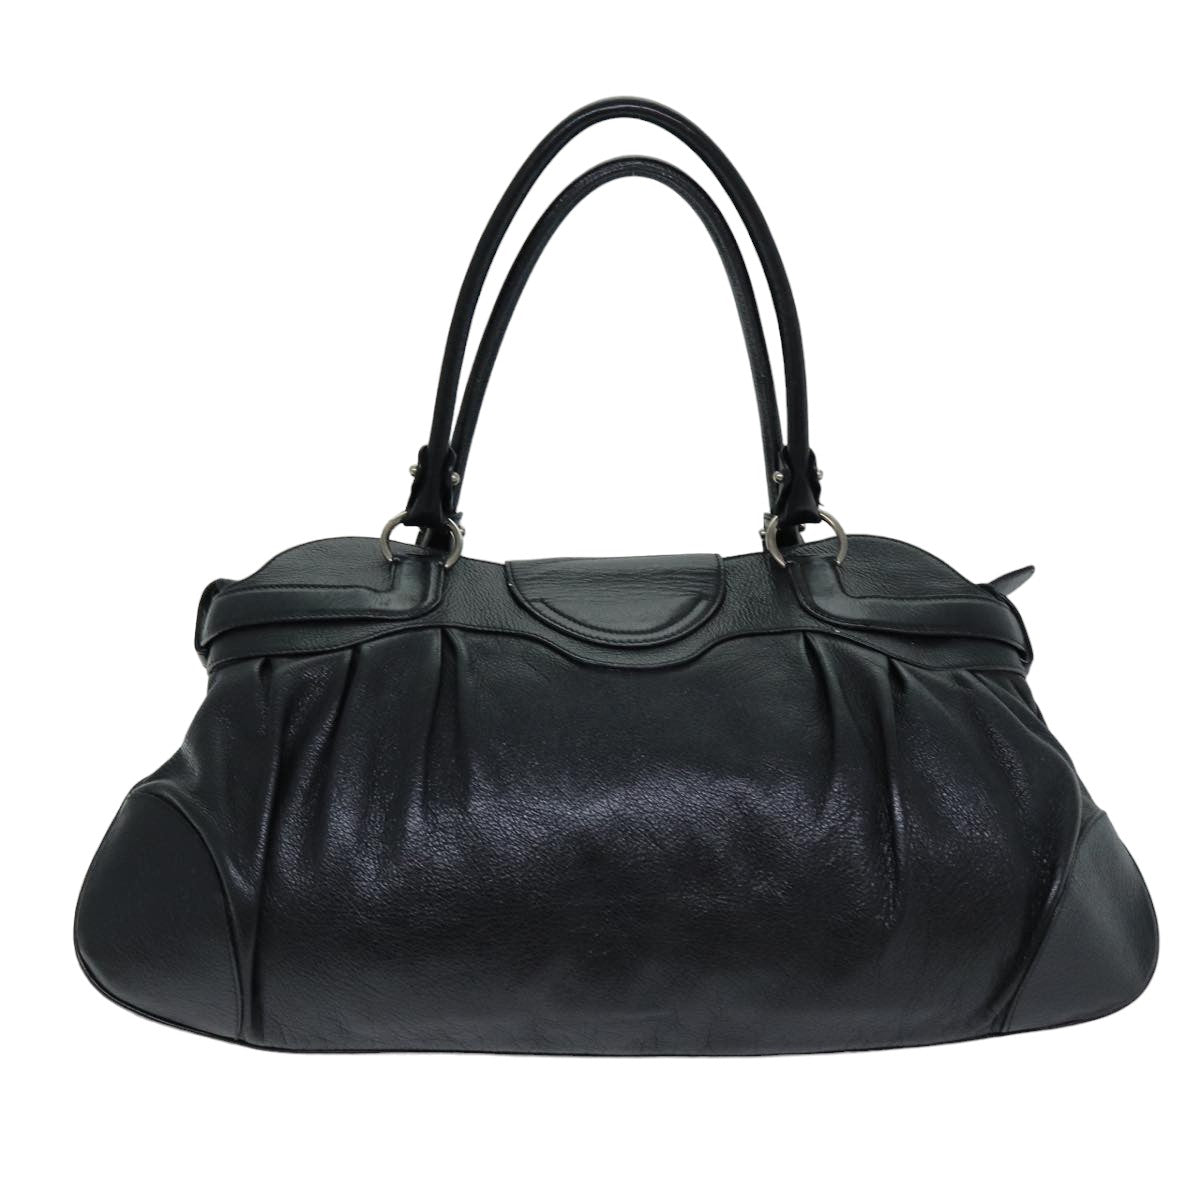 Salvatore Ferragamo Gancini Hand Bag Leather Black Auth 76486 - 0